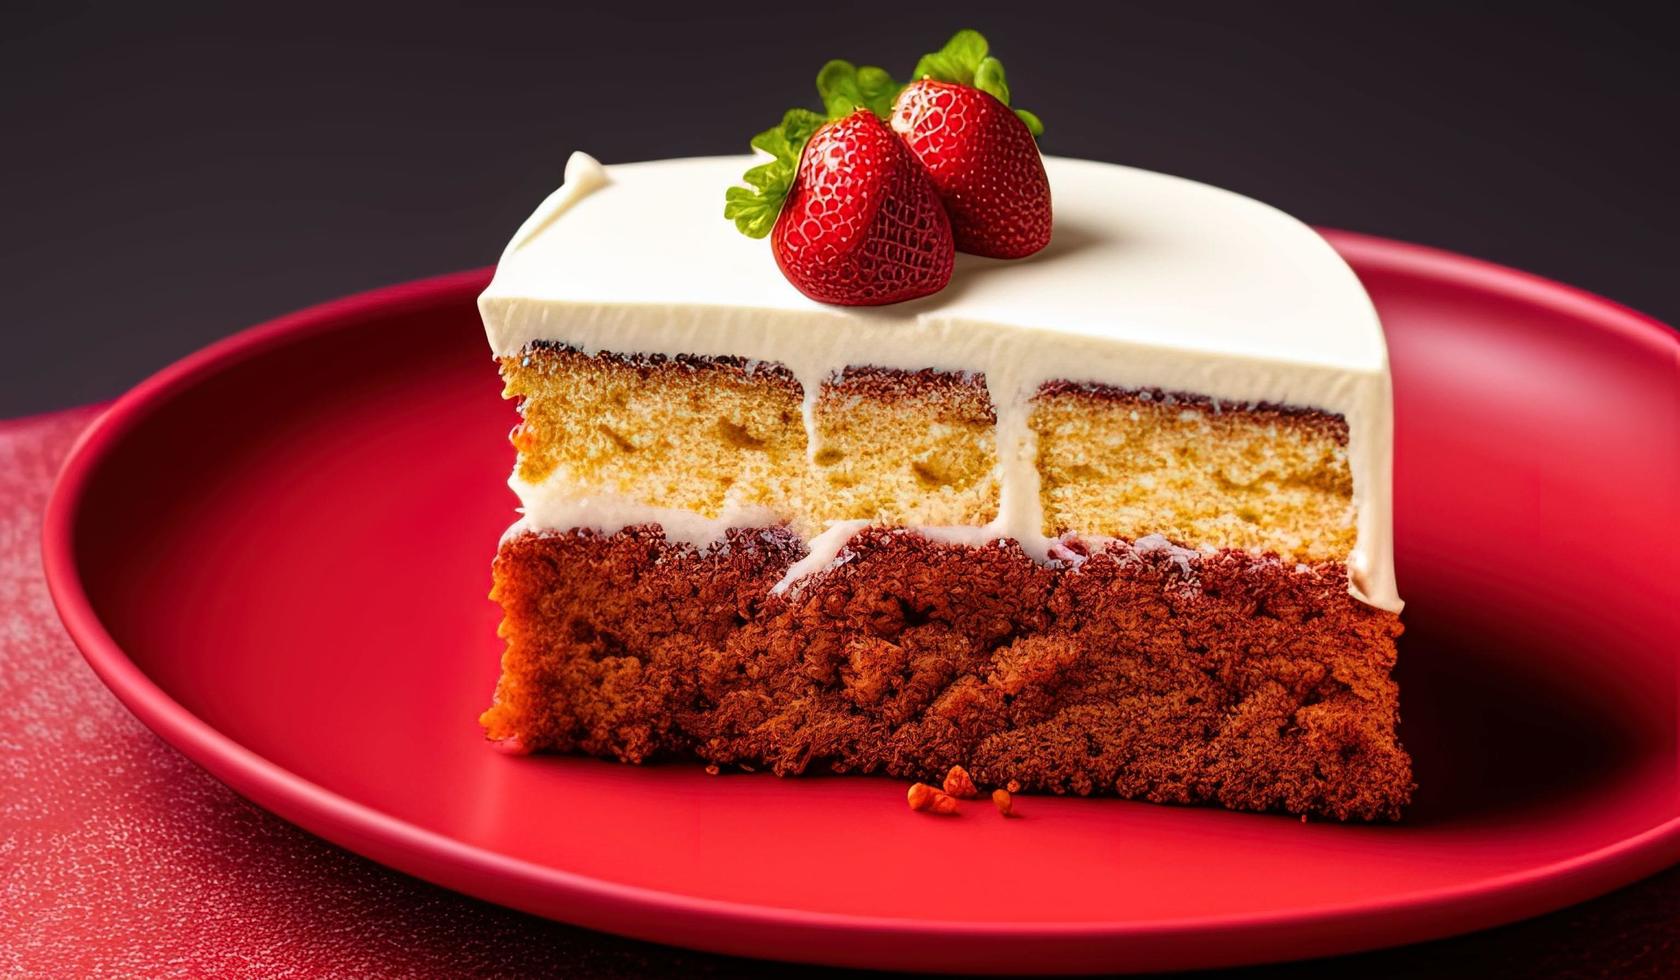 fotografía profesional de comida de un trozo de pastel encima de un plato rojo foto